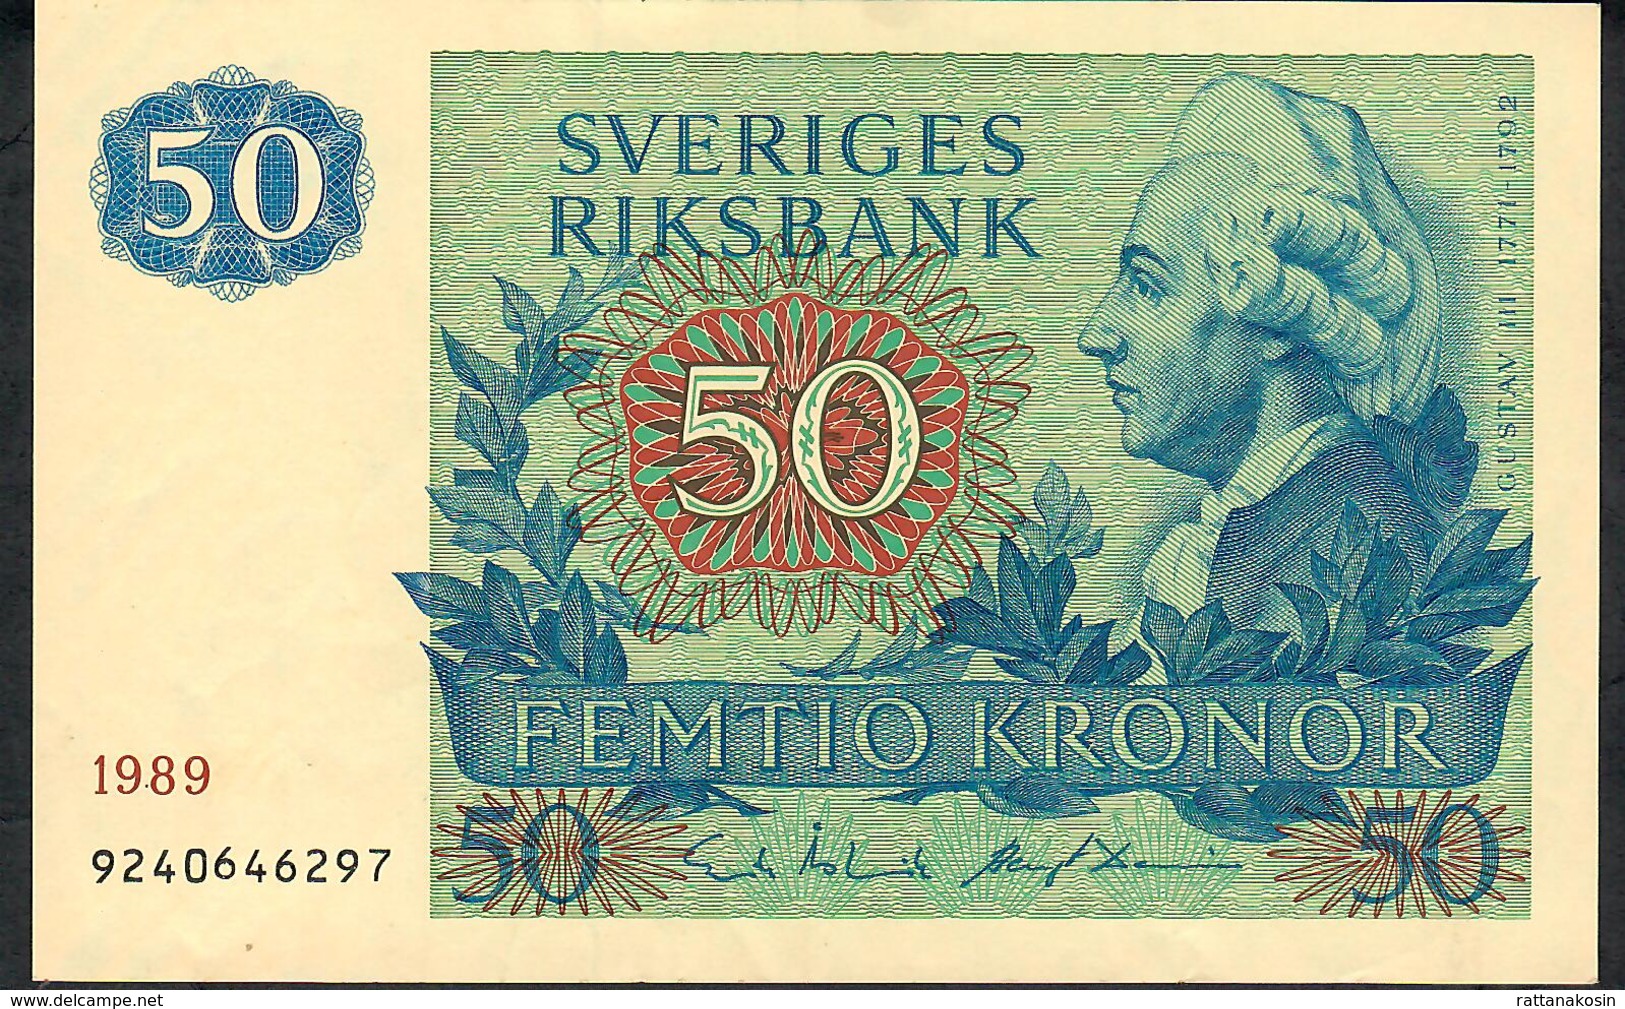 SWEDEN P53d 50 KRONOR 1989 #9240646297  XF - Suecia